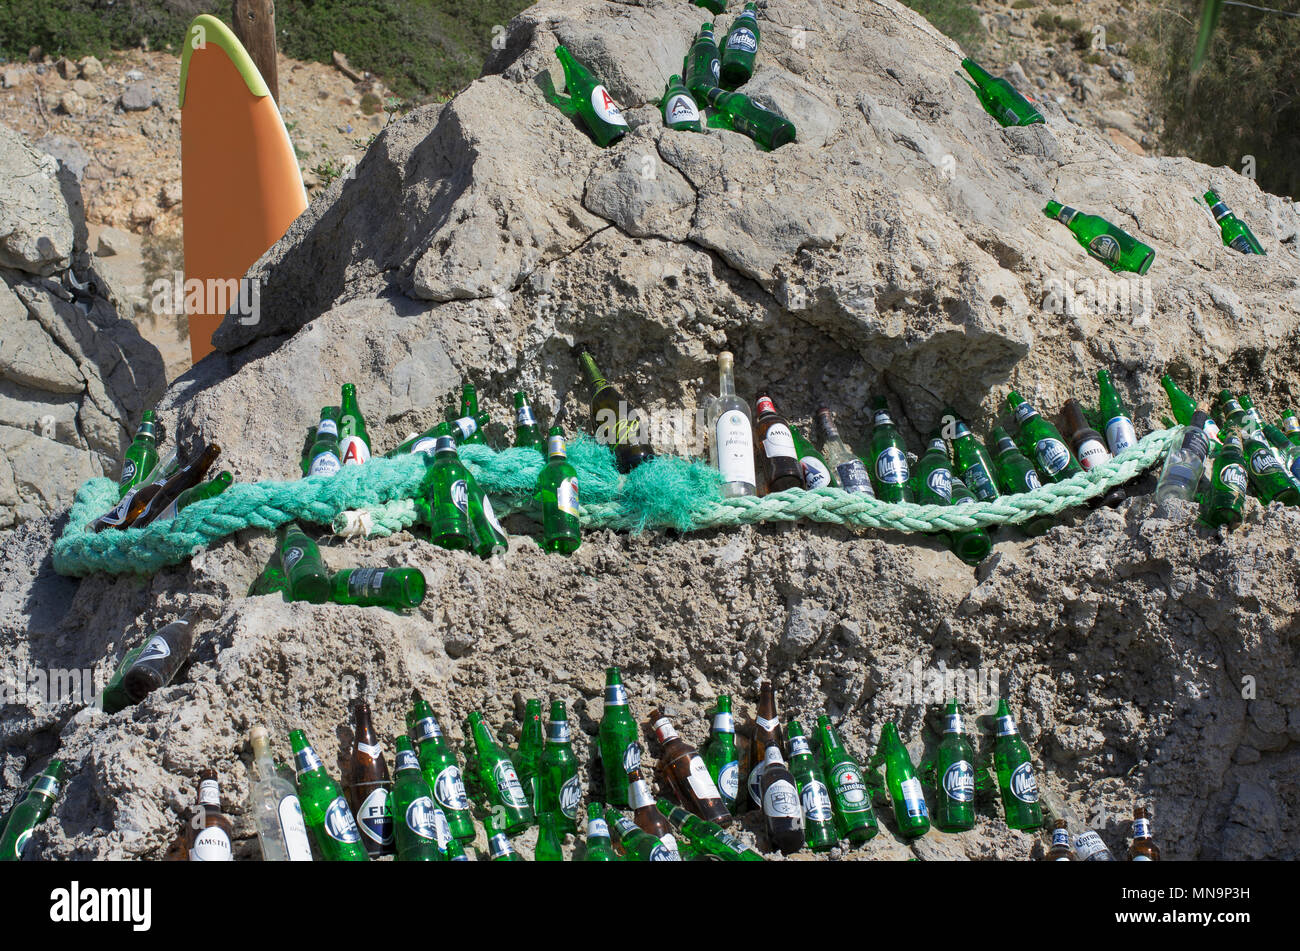 La playa de Tsampika, la isla de Rodas, Grecia - 21 de septiembre de 2017: hermosamente dispuestas las botellas de cerveza vacías sobre una enorme roca en un clima soleado. Marca Foto de stock